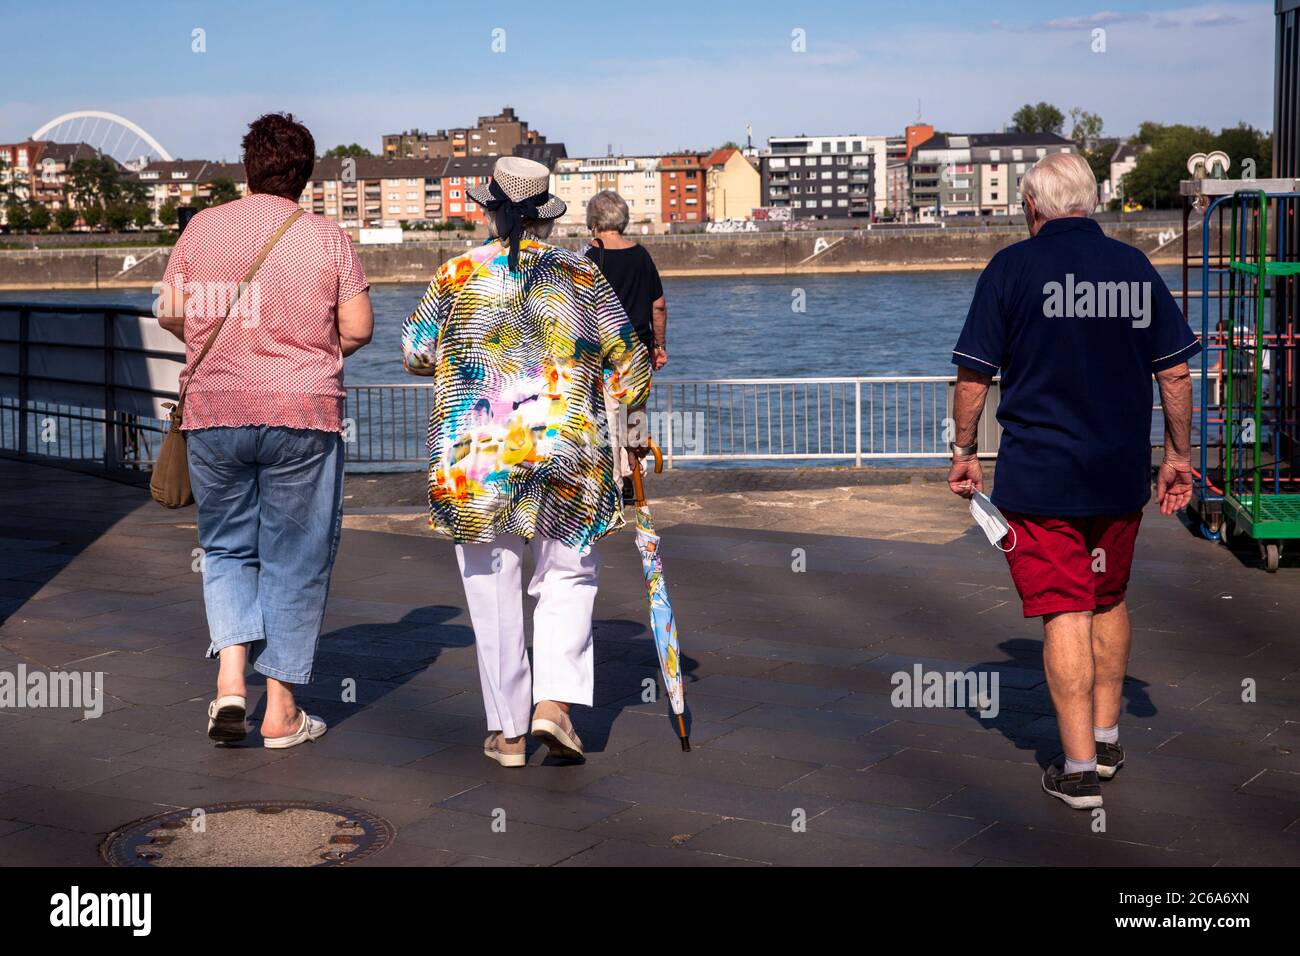 Femme en blouse colorée avec chapeau et parapluie marche avec des compagnons à travers le port de Rheinau, Cologne, Allemagne Frau à bunter Bluse mit Hut und Re Banque D'Images